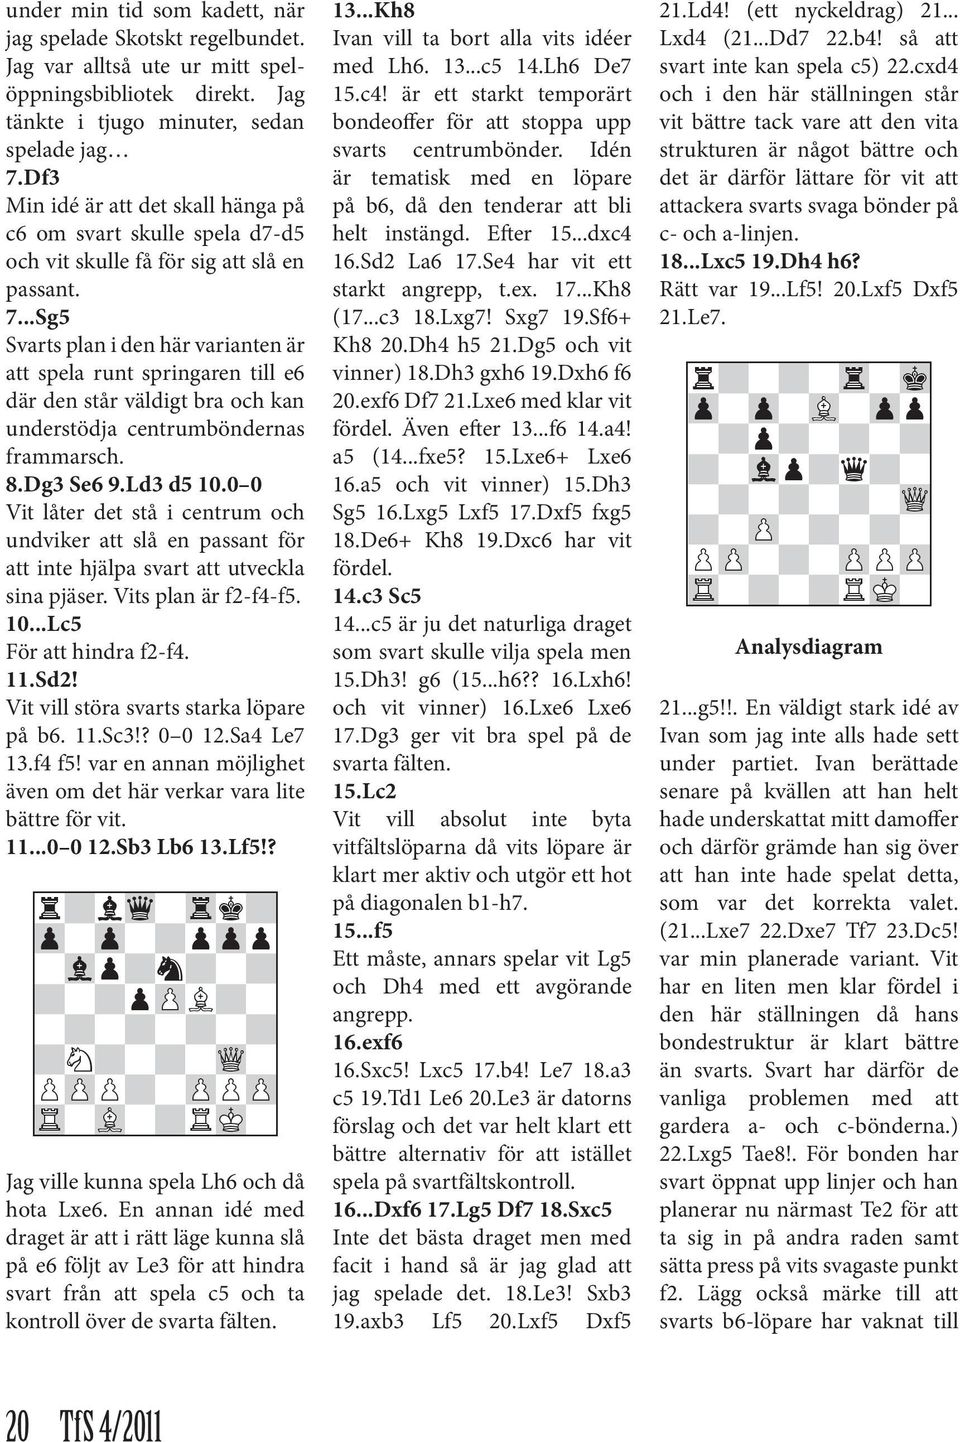 ..Sg5 Svarts plan i den här varianten är att spela runt springaren till e6 där den står väldigt bra och kan understödja centrumböndernas frammarsch. 8.Dg3 Se6 9.Ld3 d5 10.